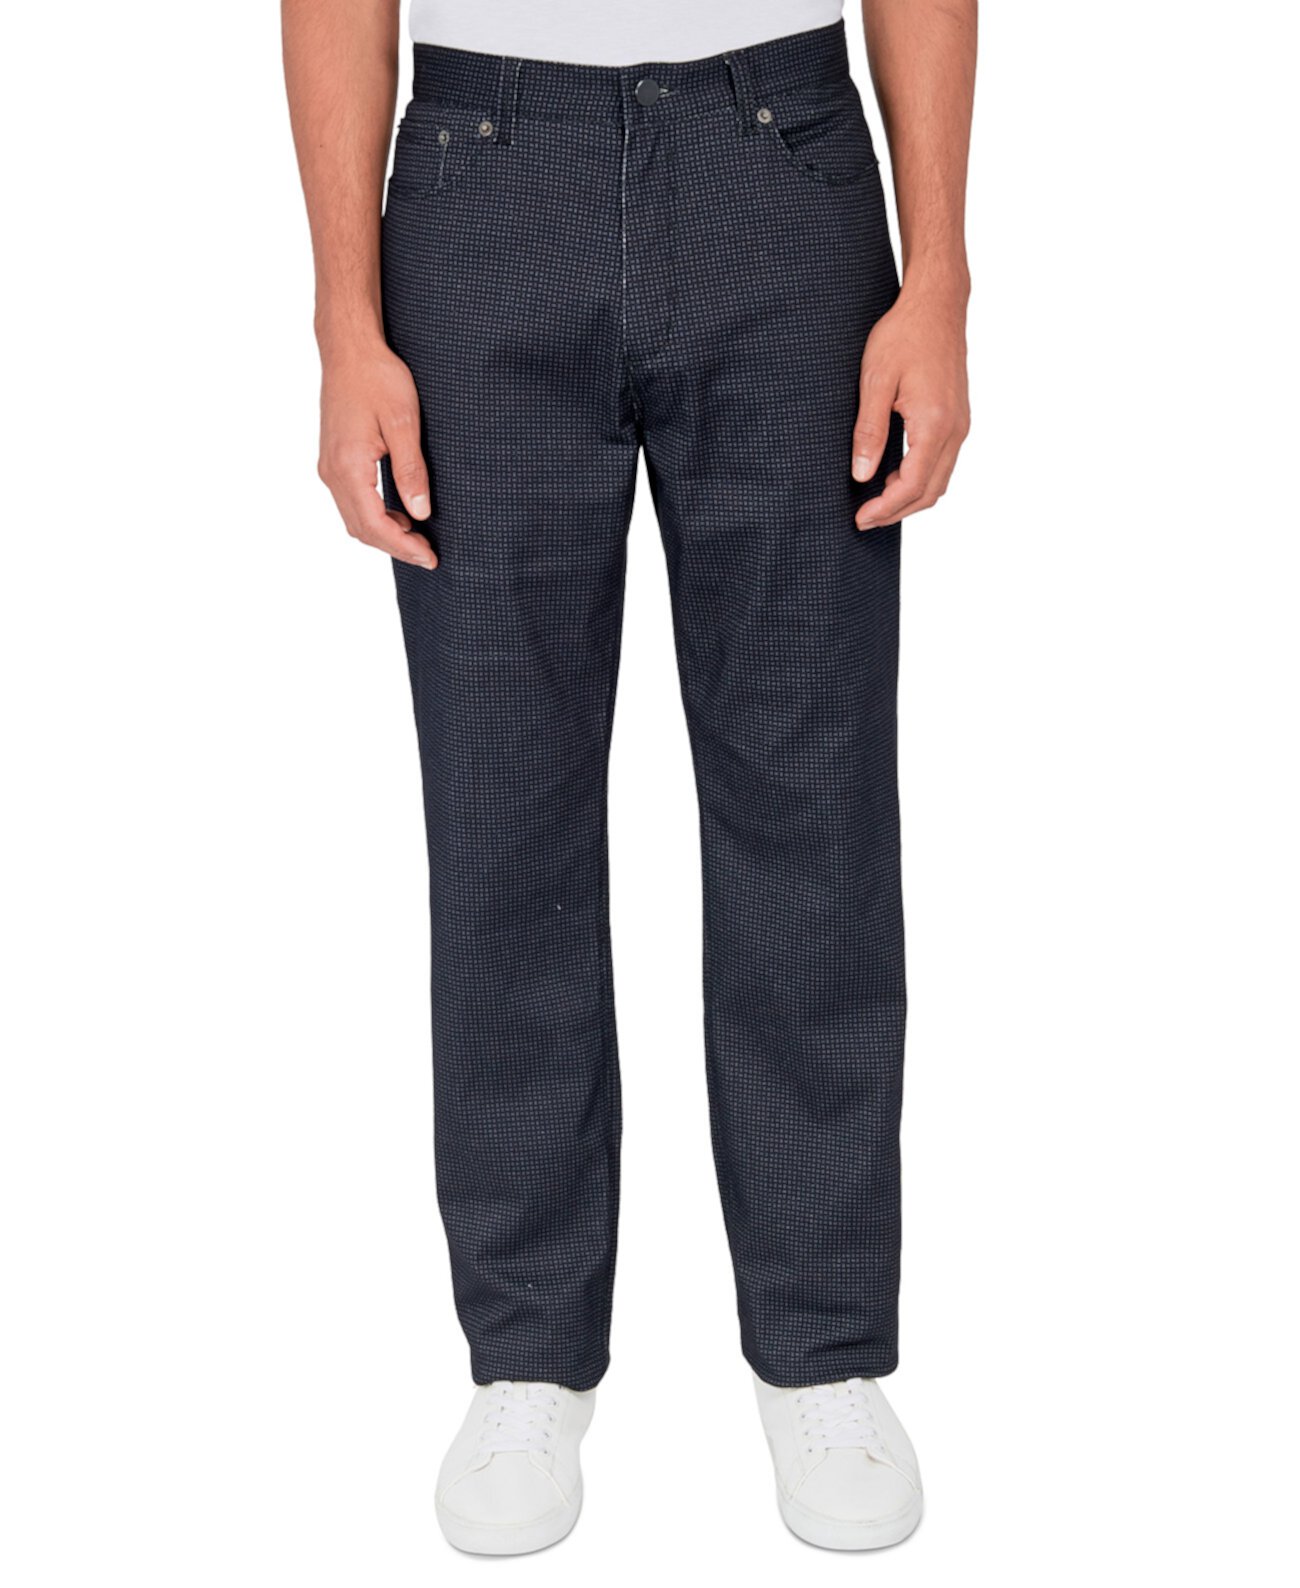 Мужские брюки стандартного кроя с 5 карманами и геопринтом Society of Threads